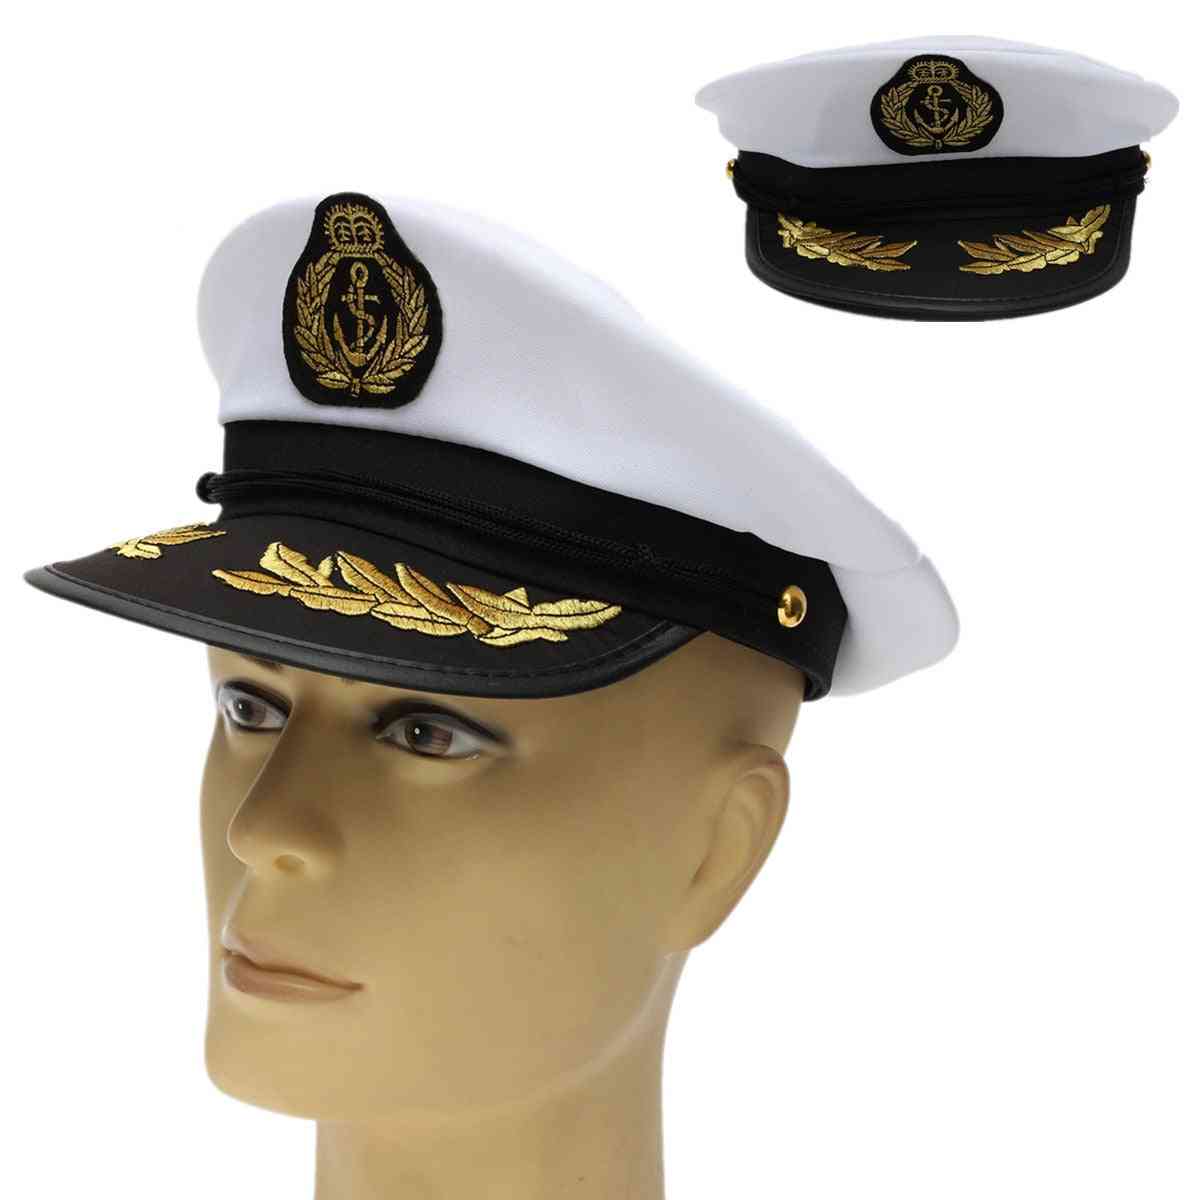 Captain Skipper Sailor Boat Hat, Costume Navy Ship Party Fancy Cap